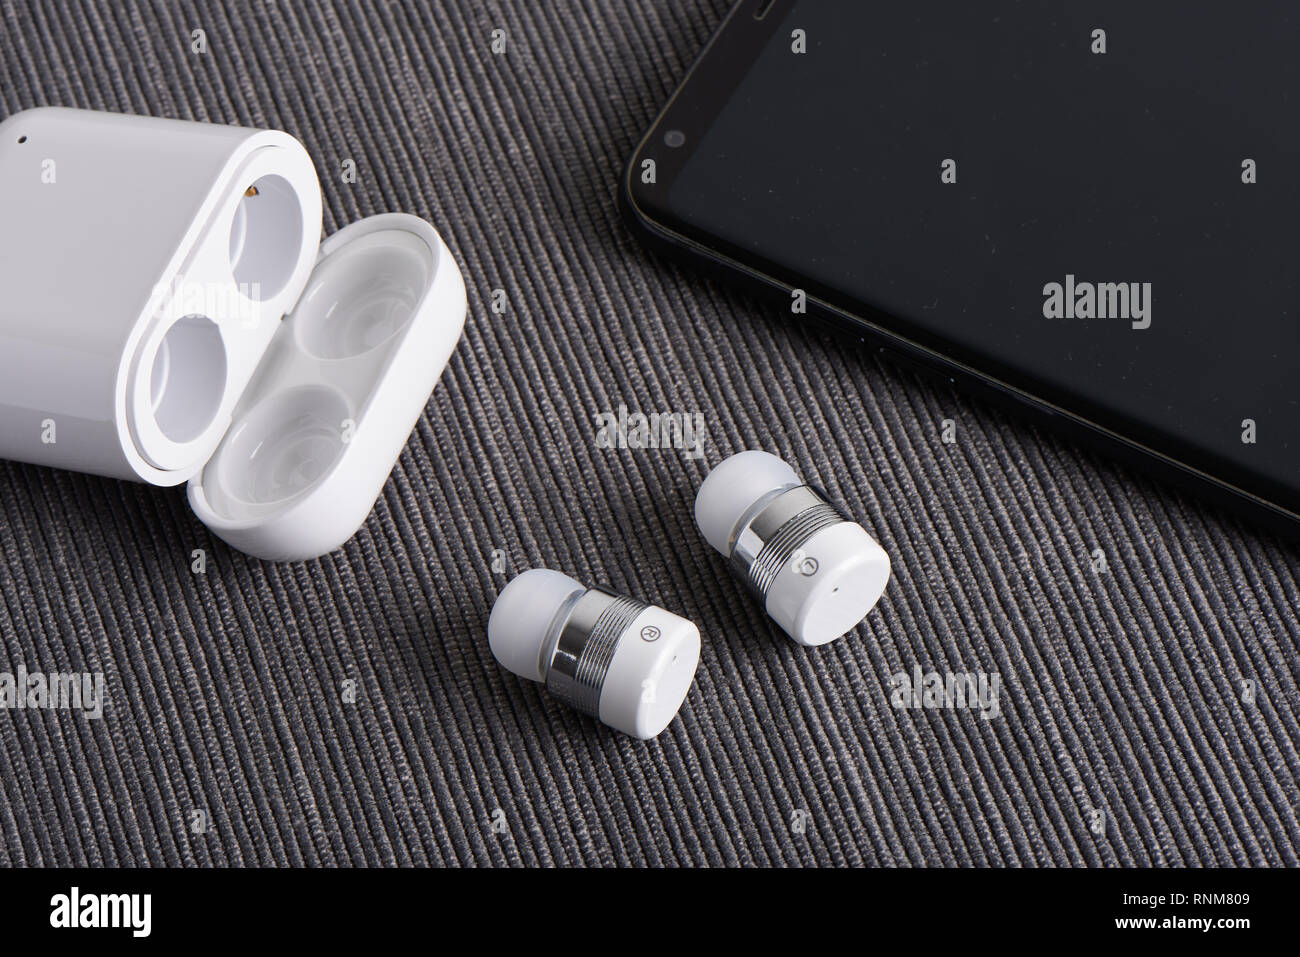 Auriculares Bluetooth inalámbricos inalámbrica con cargo caso y smartphone Foto de stock